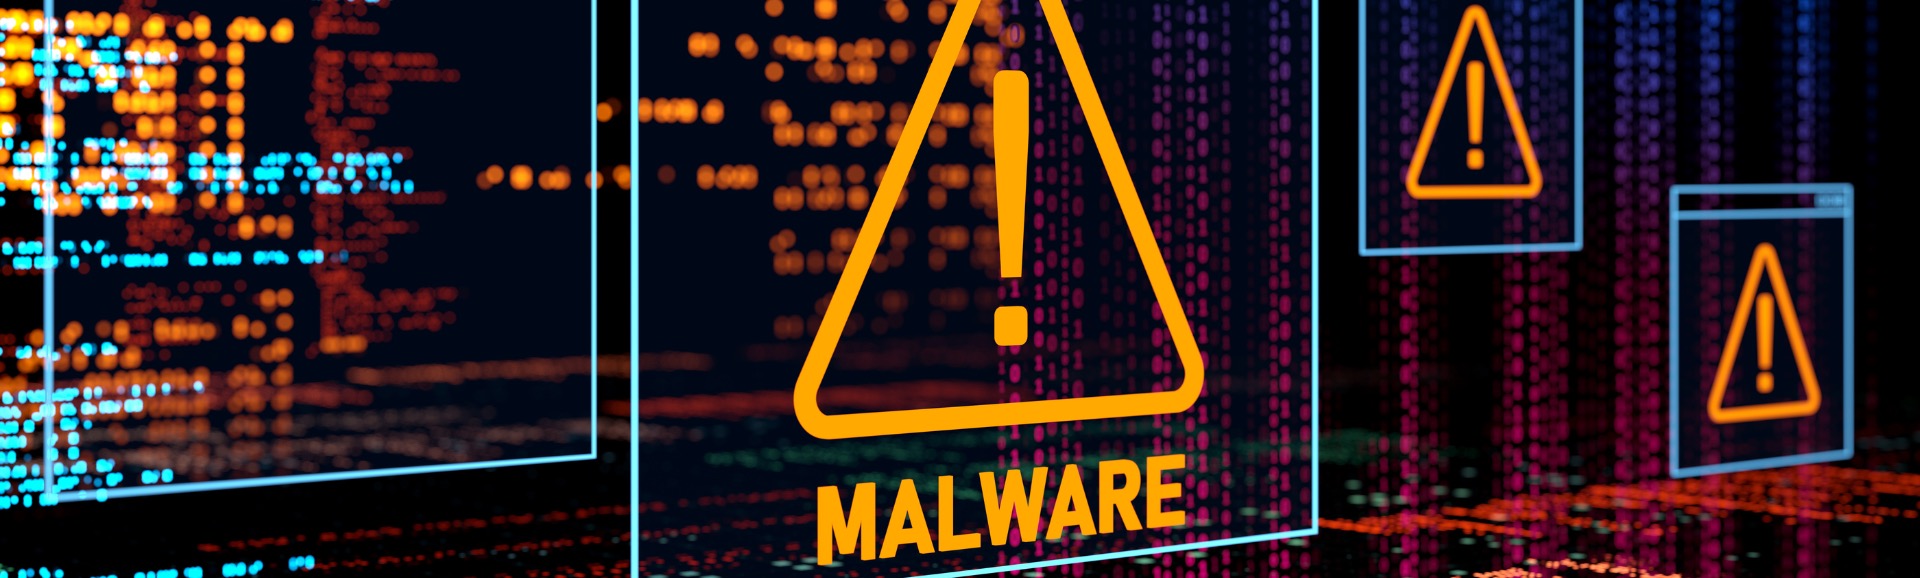 Malware Warning